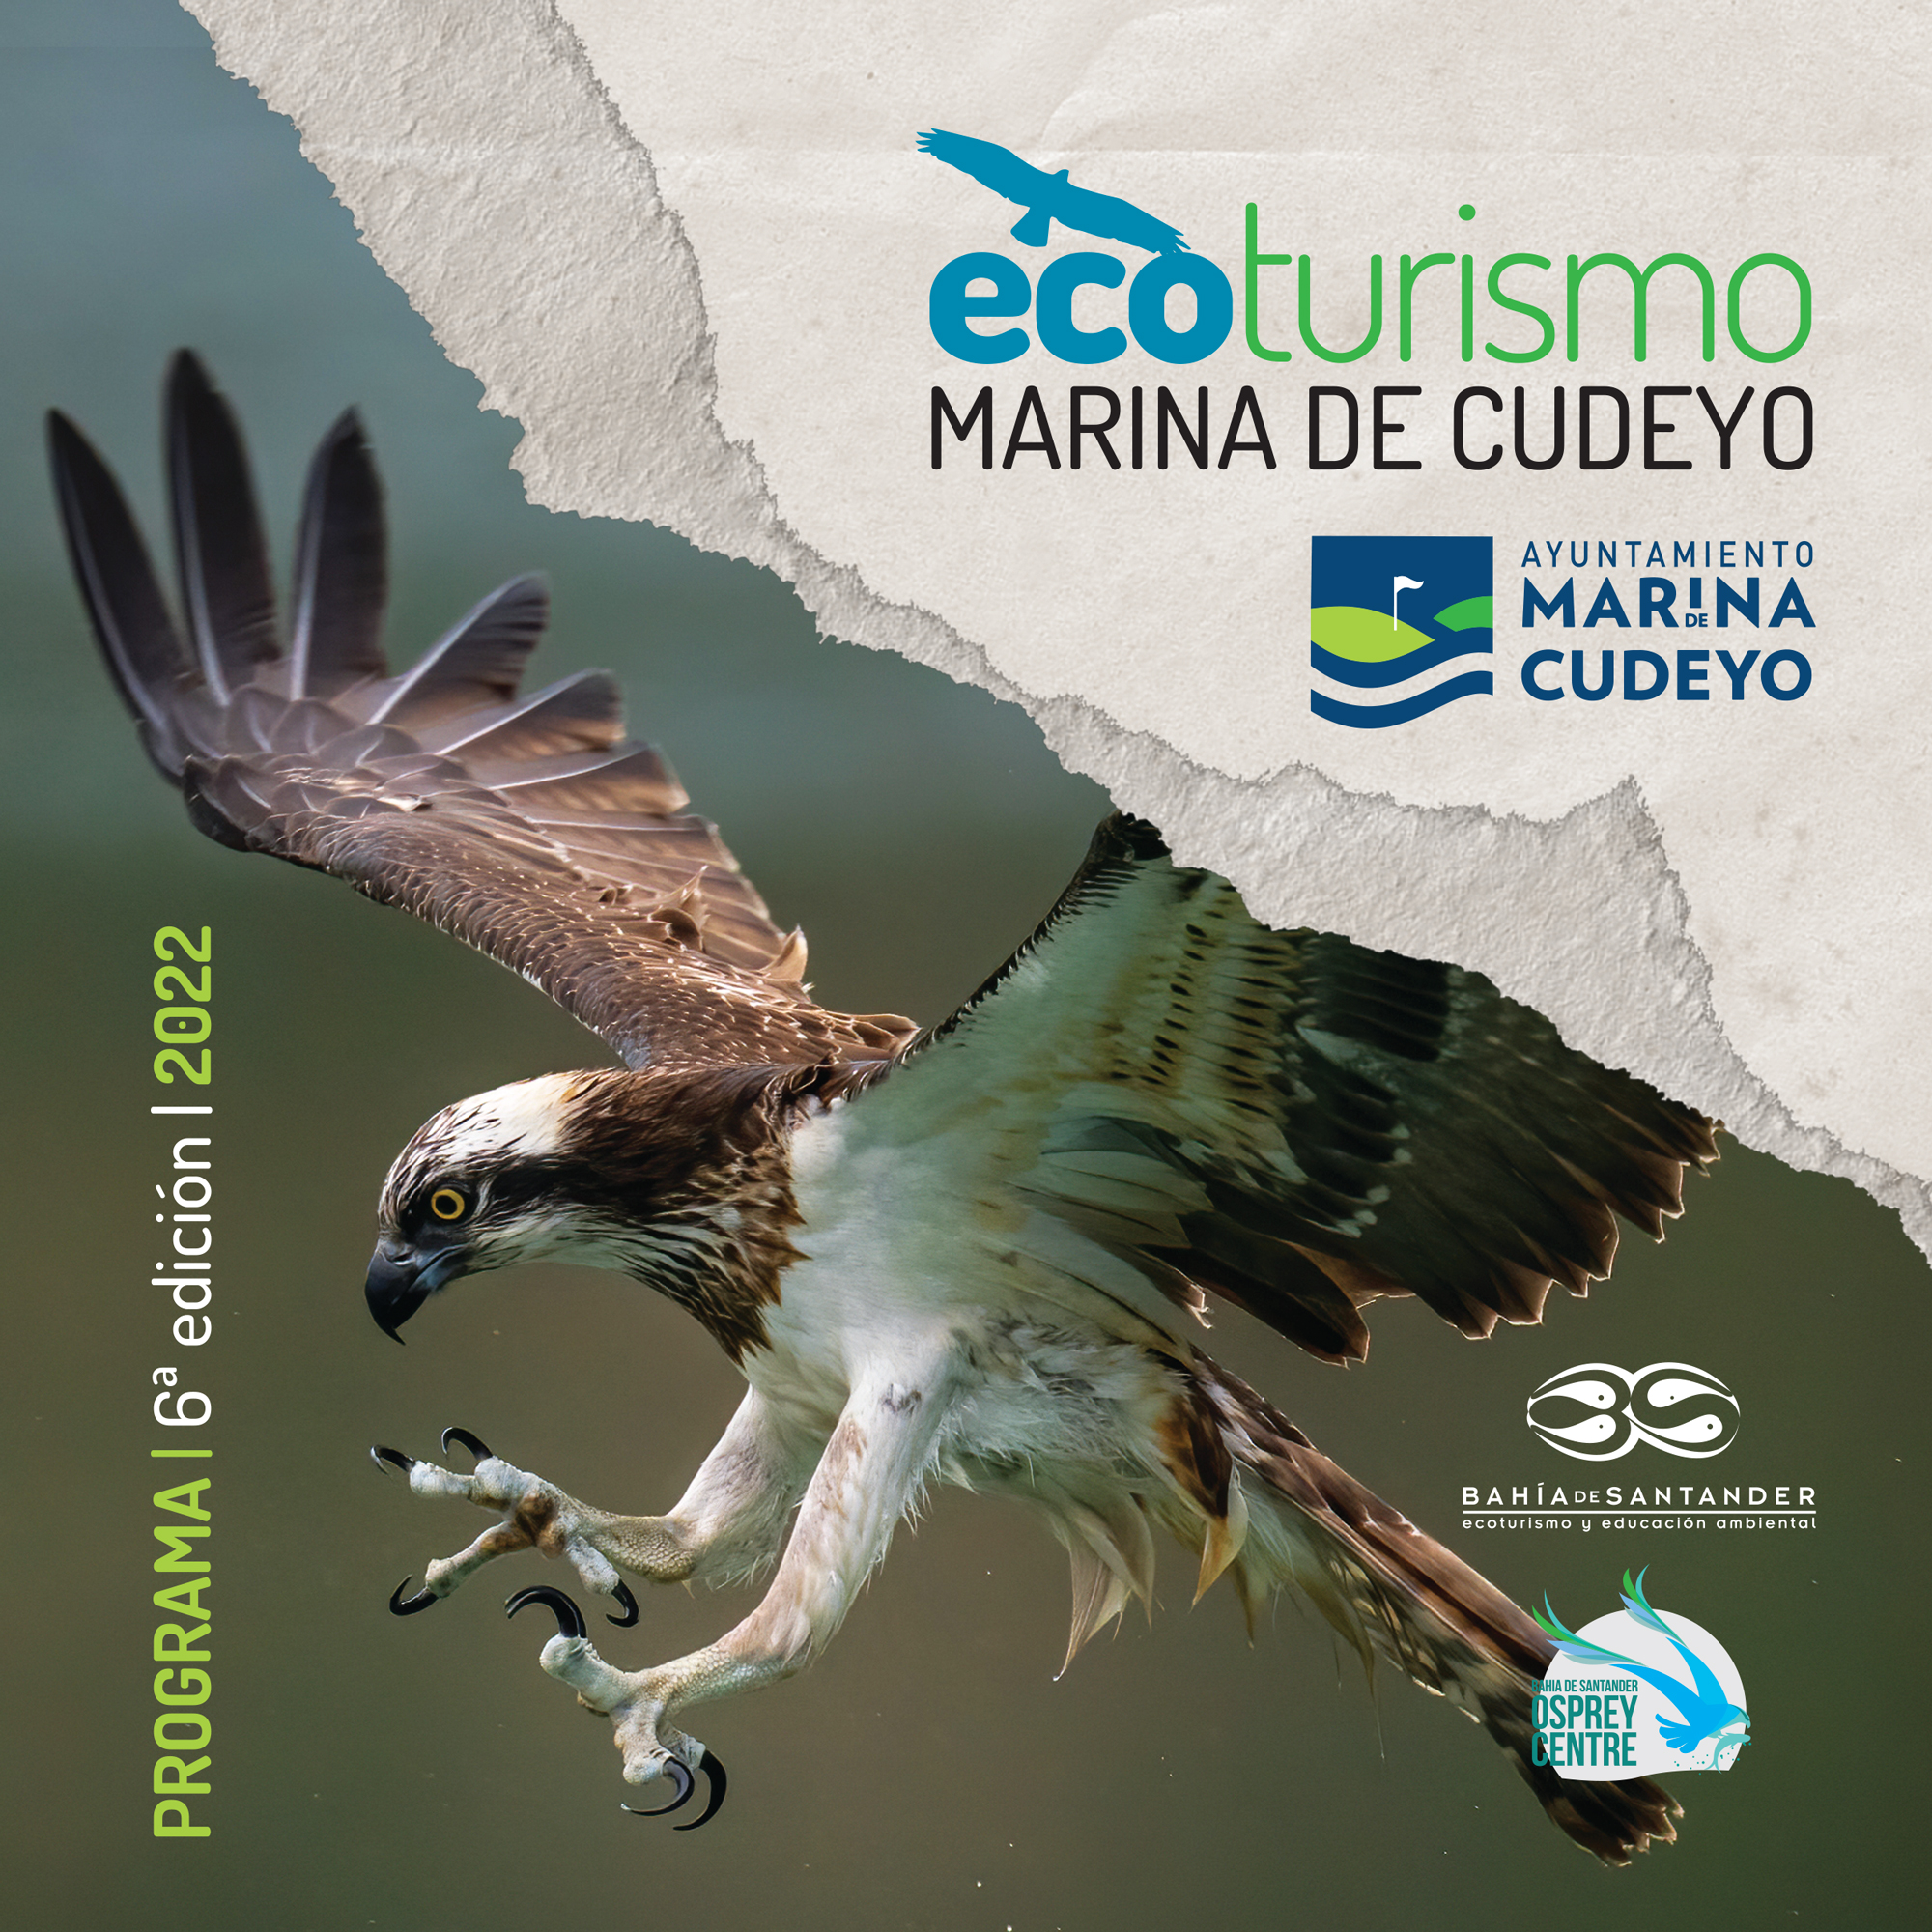 6ª edición del Programa de Ecoturismo del Ayuntamiento de Marina de Cudeyo